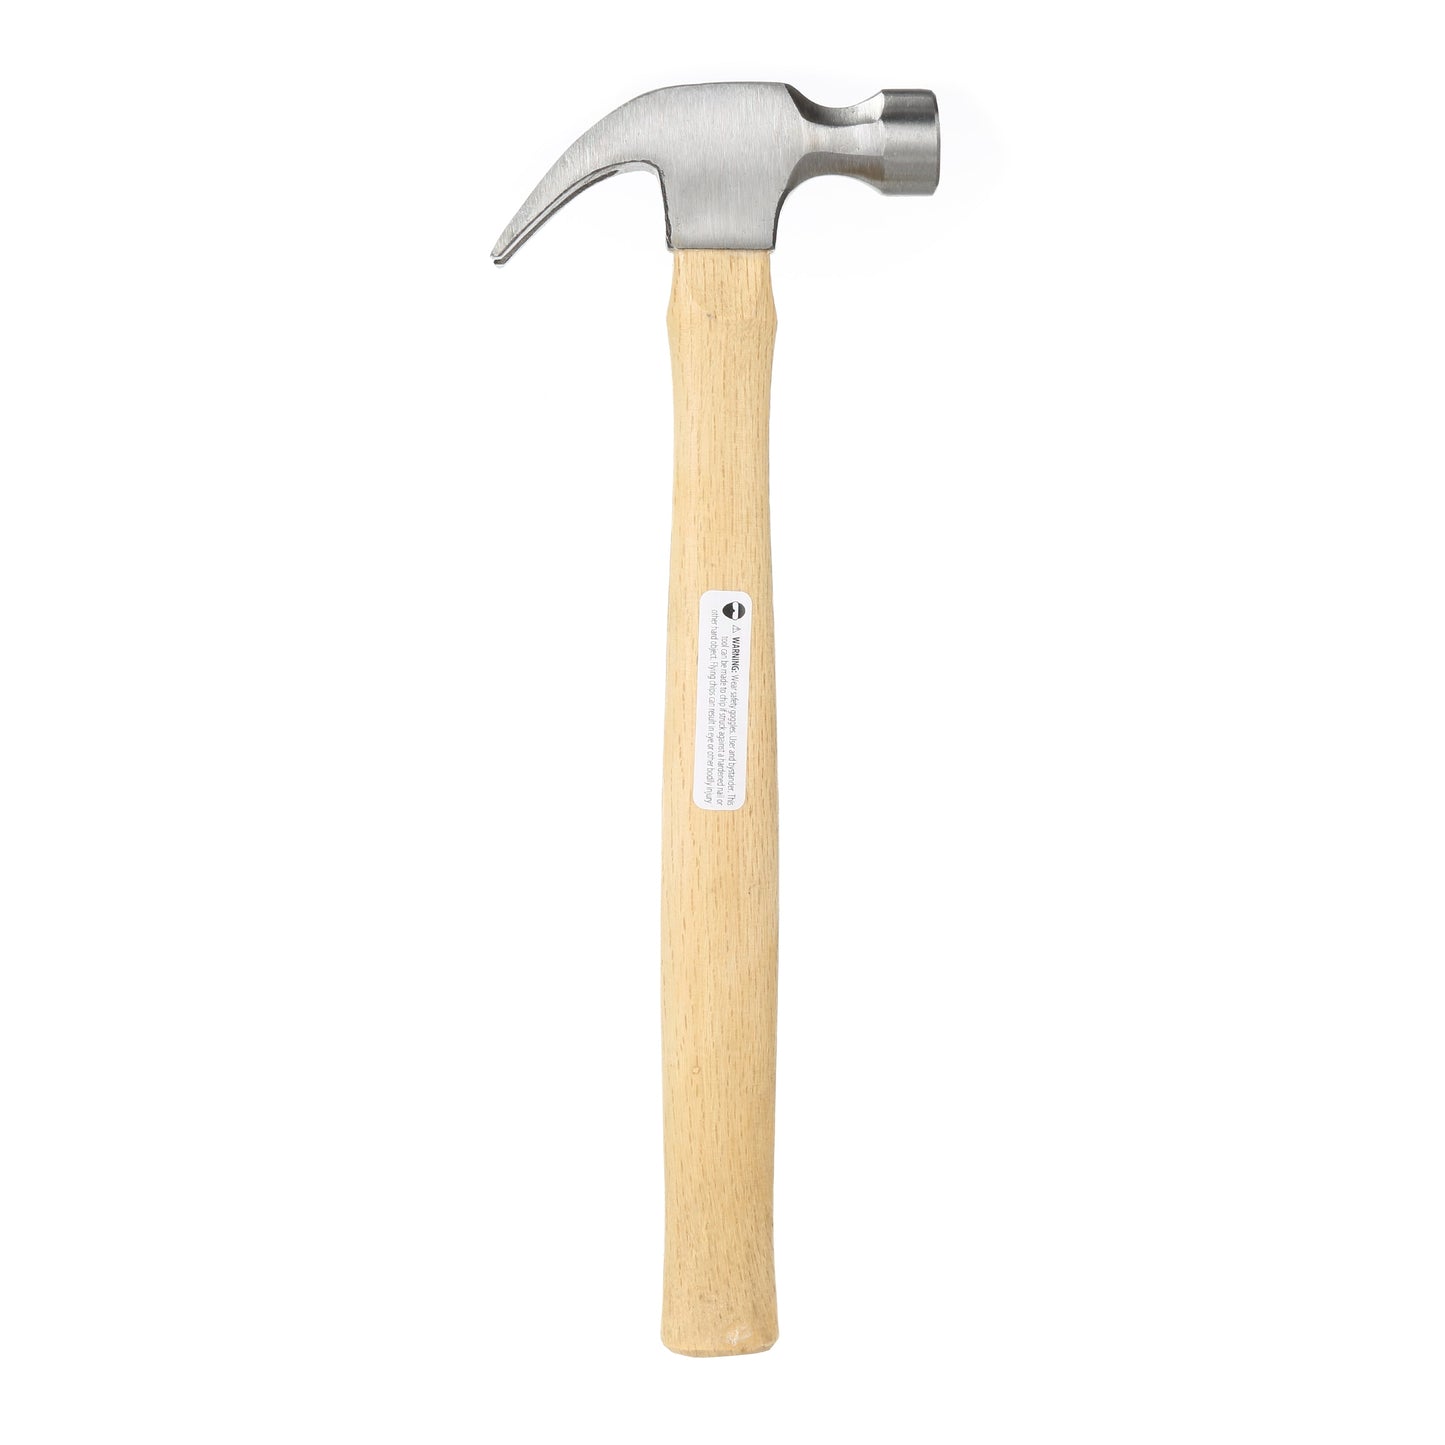 Hyper Tough 7 oz Head Weight Wood Hammer TH20215A